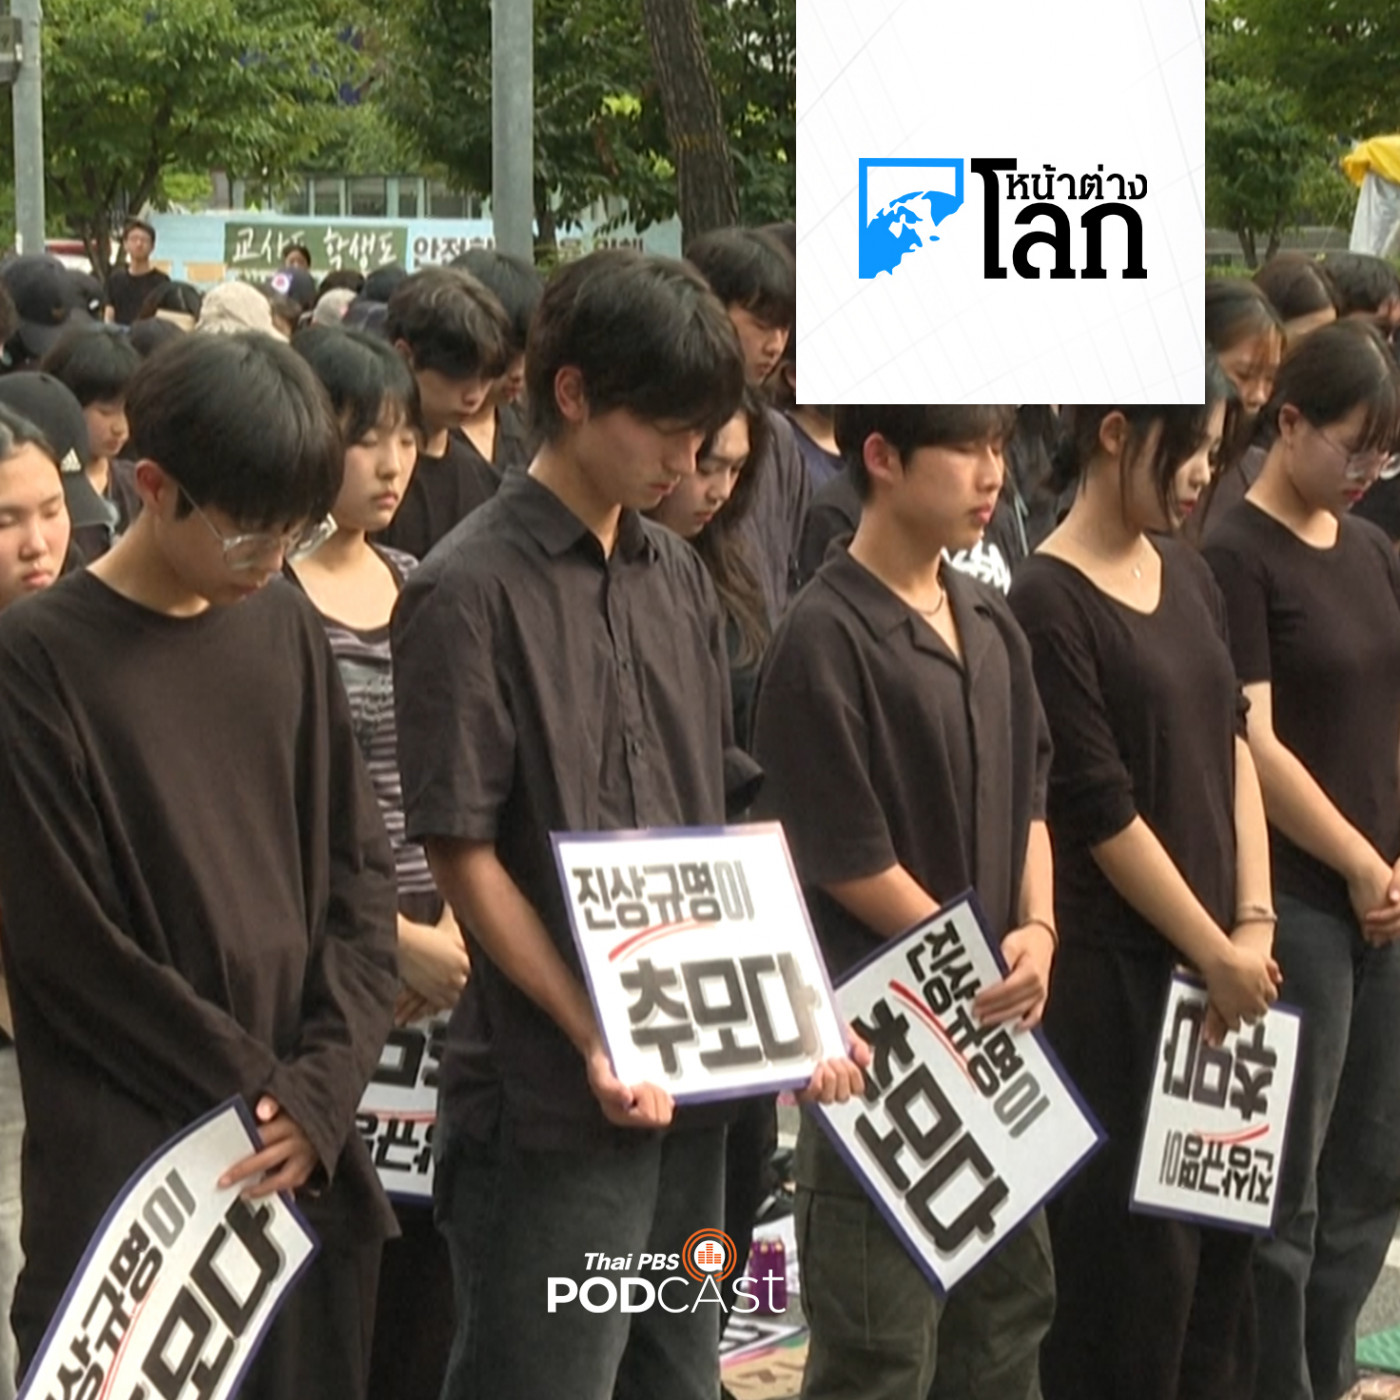 หน้าต่างโลก : ครูเกาหลีใต้เผชิญปัญหาถูกคุกคามทั้งจากผู้ปกครองและนักเ�